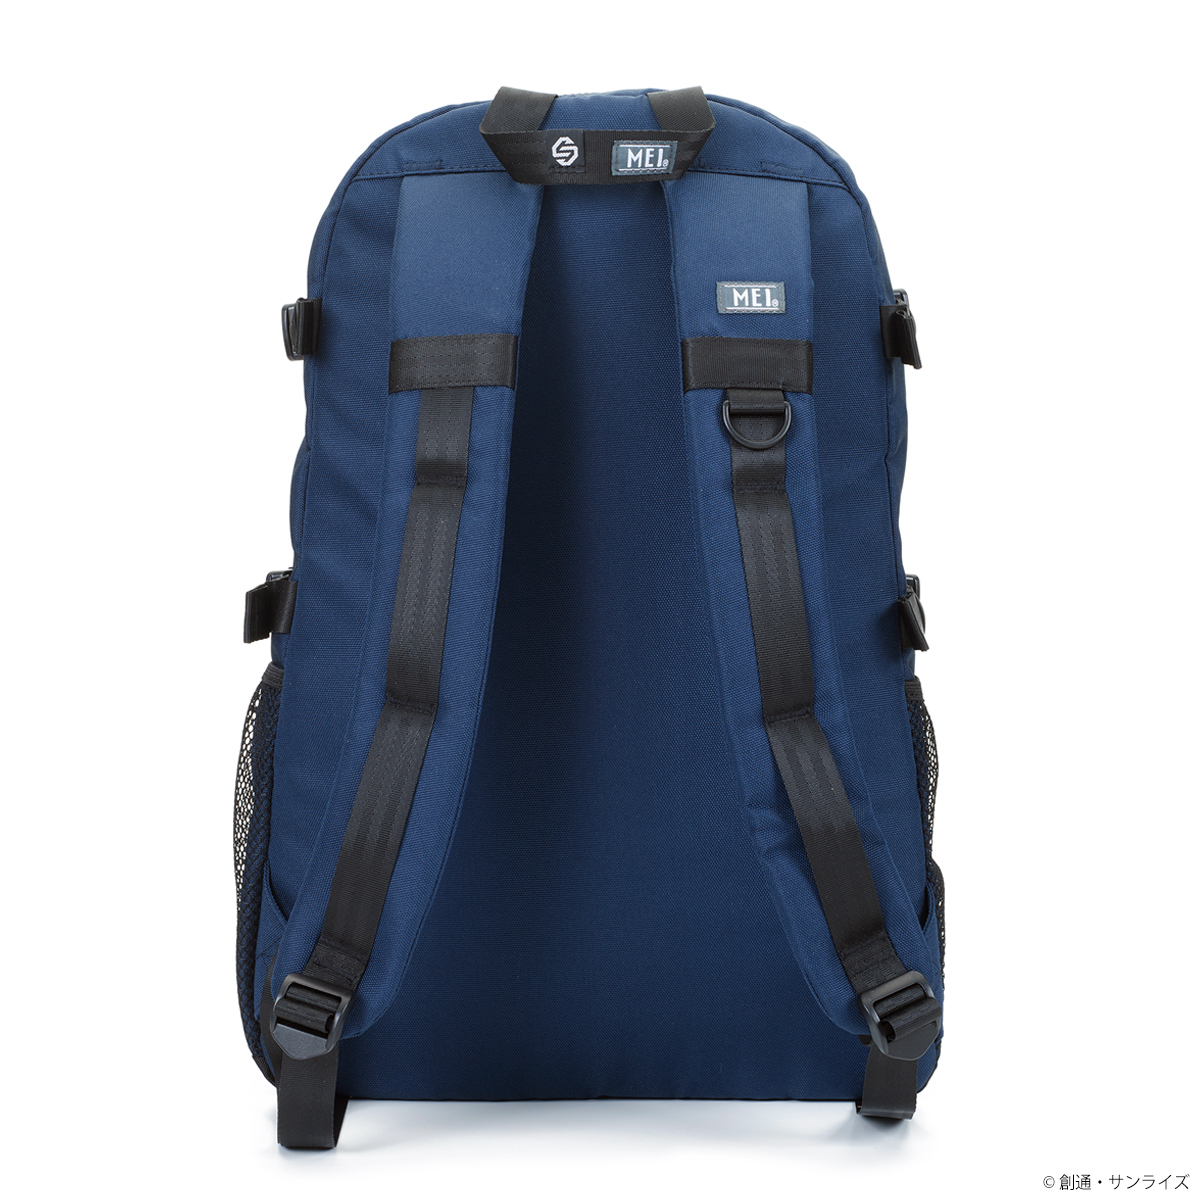 『ガンダムシリーズ』× カリフォルニア発ブランド「MEI」 タフに使えるバッグコレクション22AWモデルが STRICT-Gより発売！